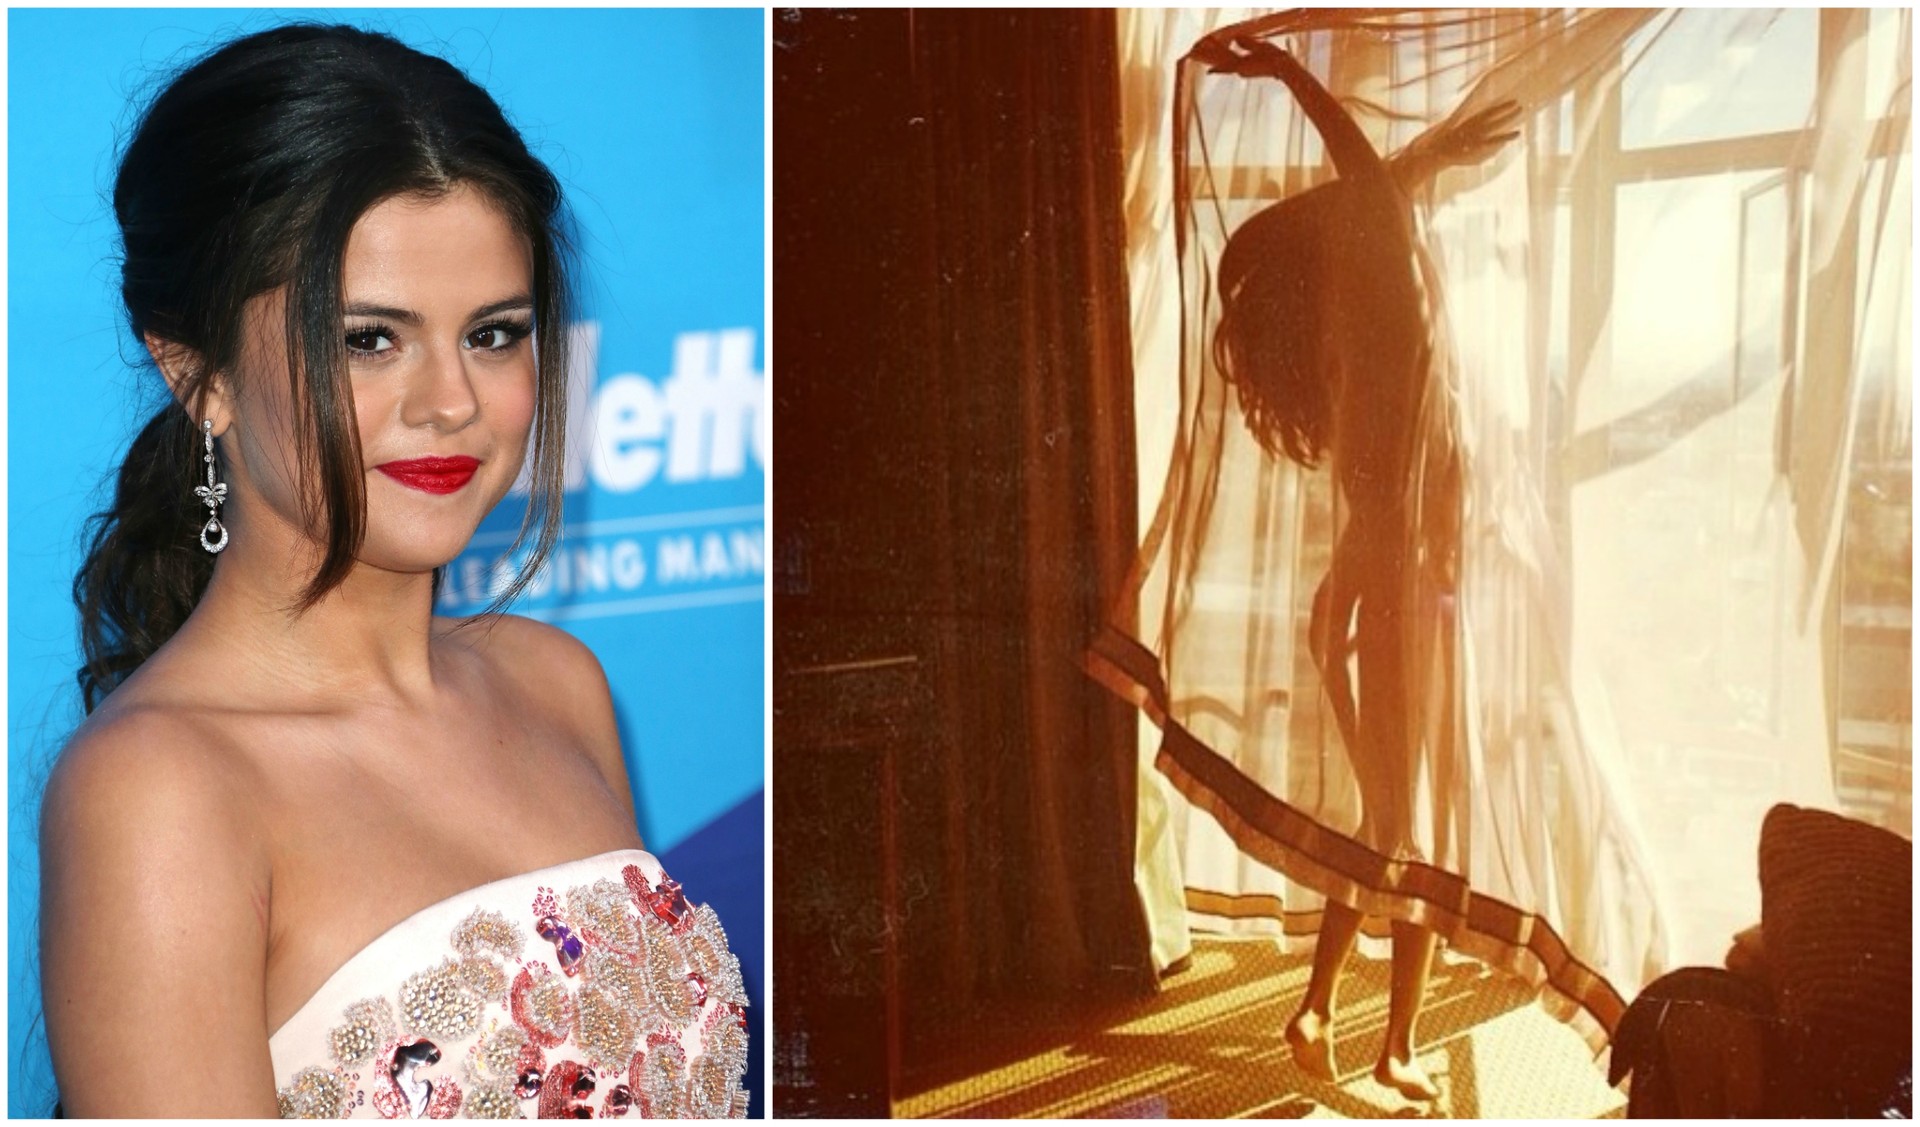 Selena Gomez e sua foto sem nenhuma roupa. (Foto: Getty Images e Instagram)